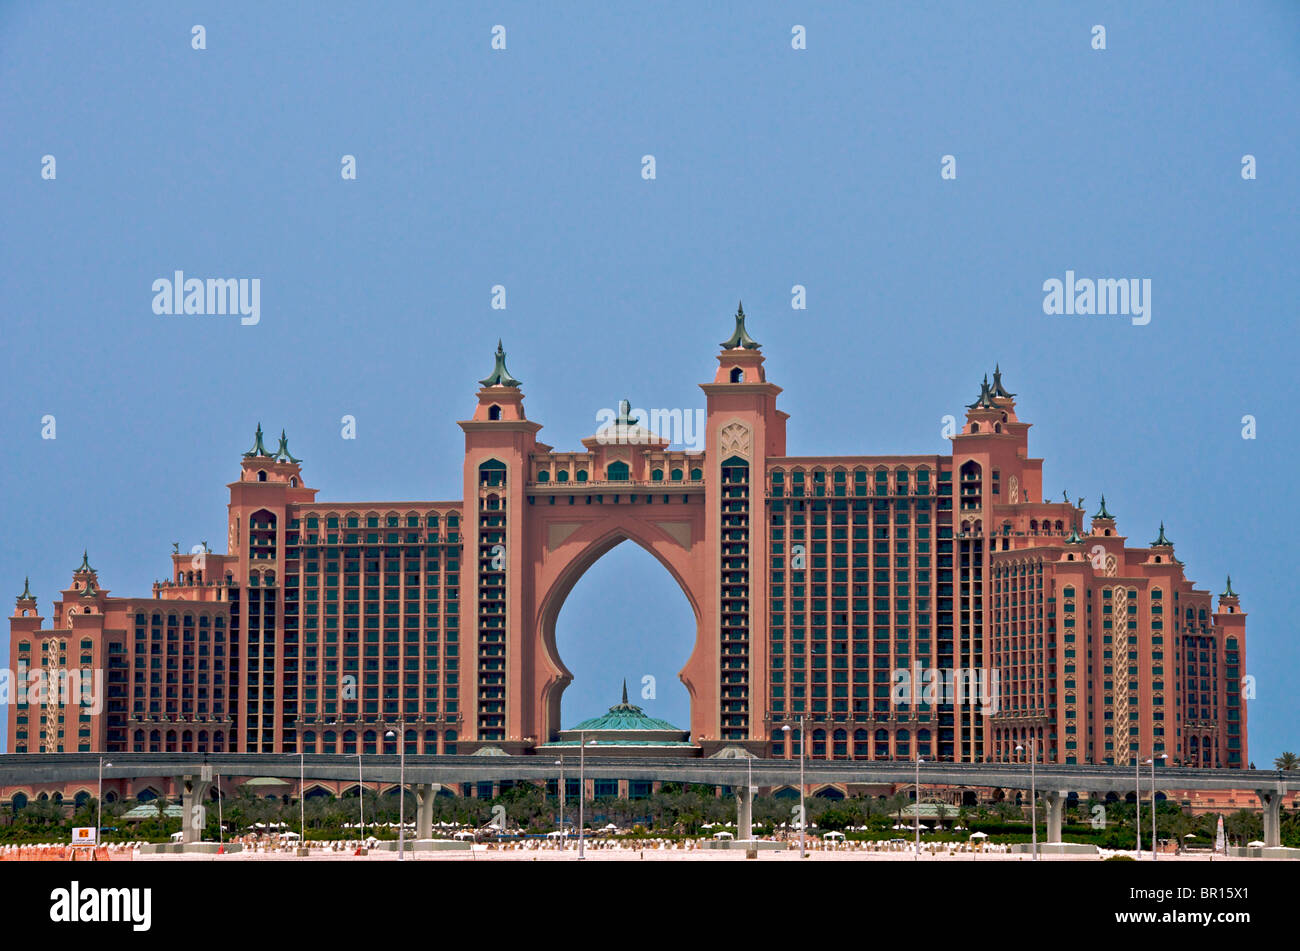 Atlantis Hotel Palm Jumeira Dubai UAE Stock Photo